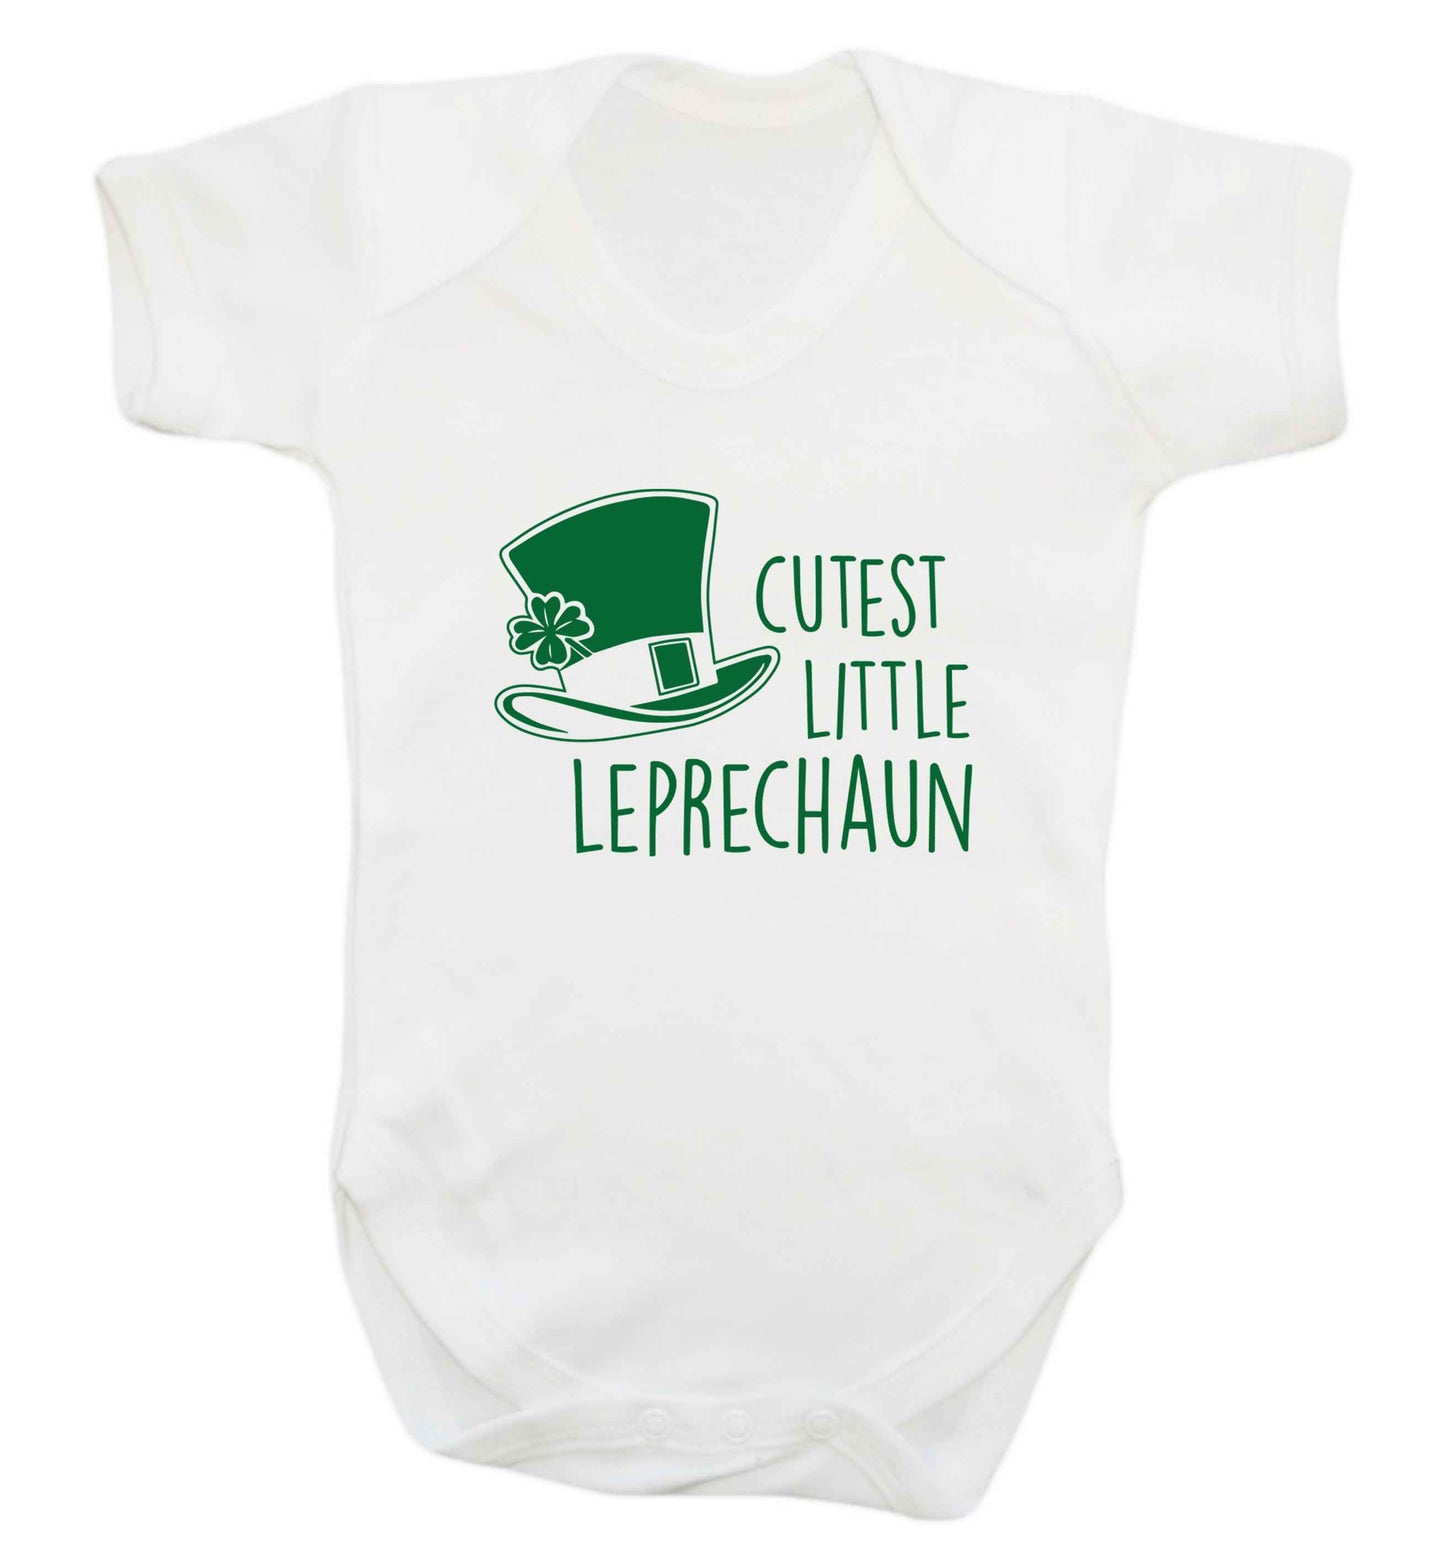 Cutest little leprechaun baby vest white 18-24 months